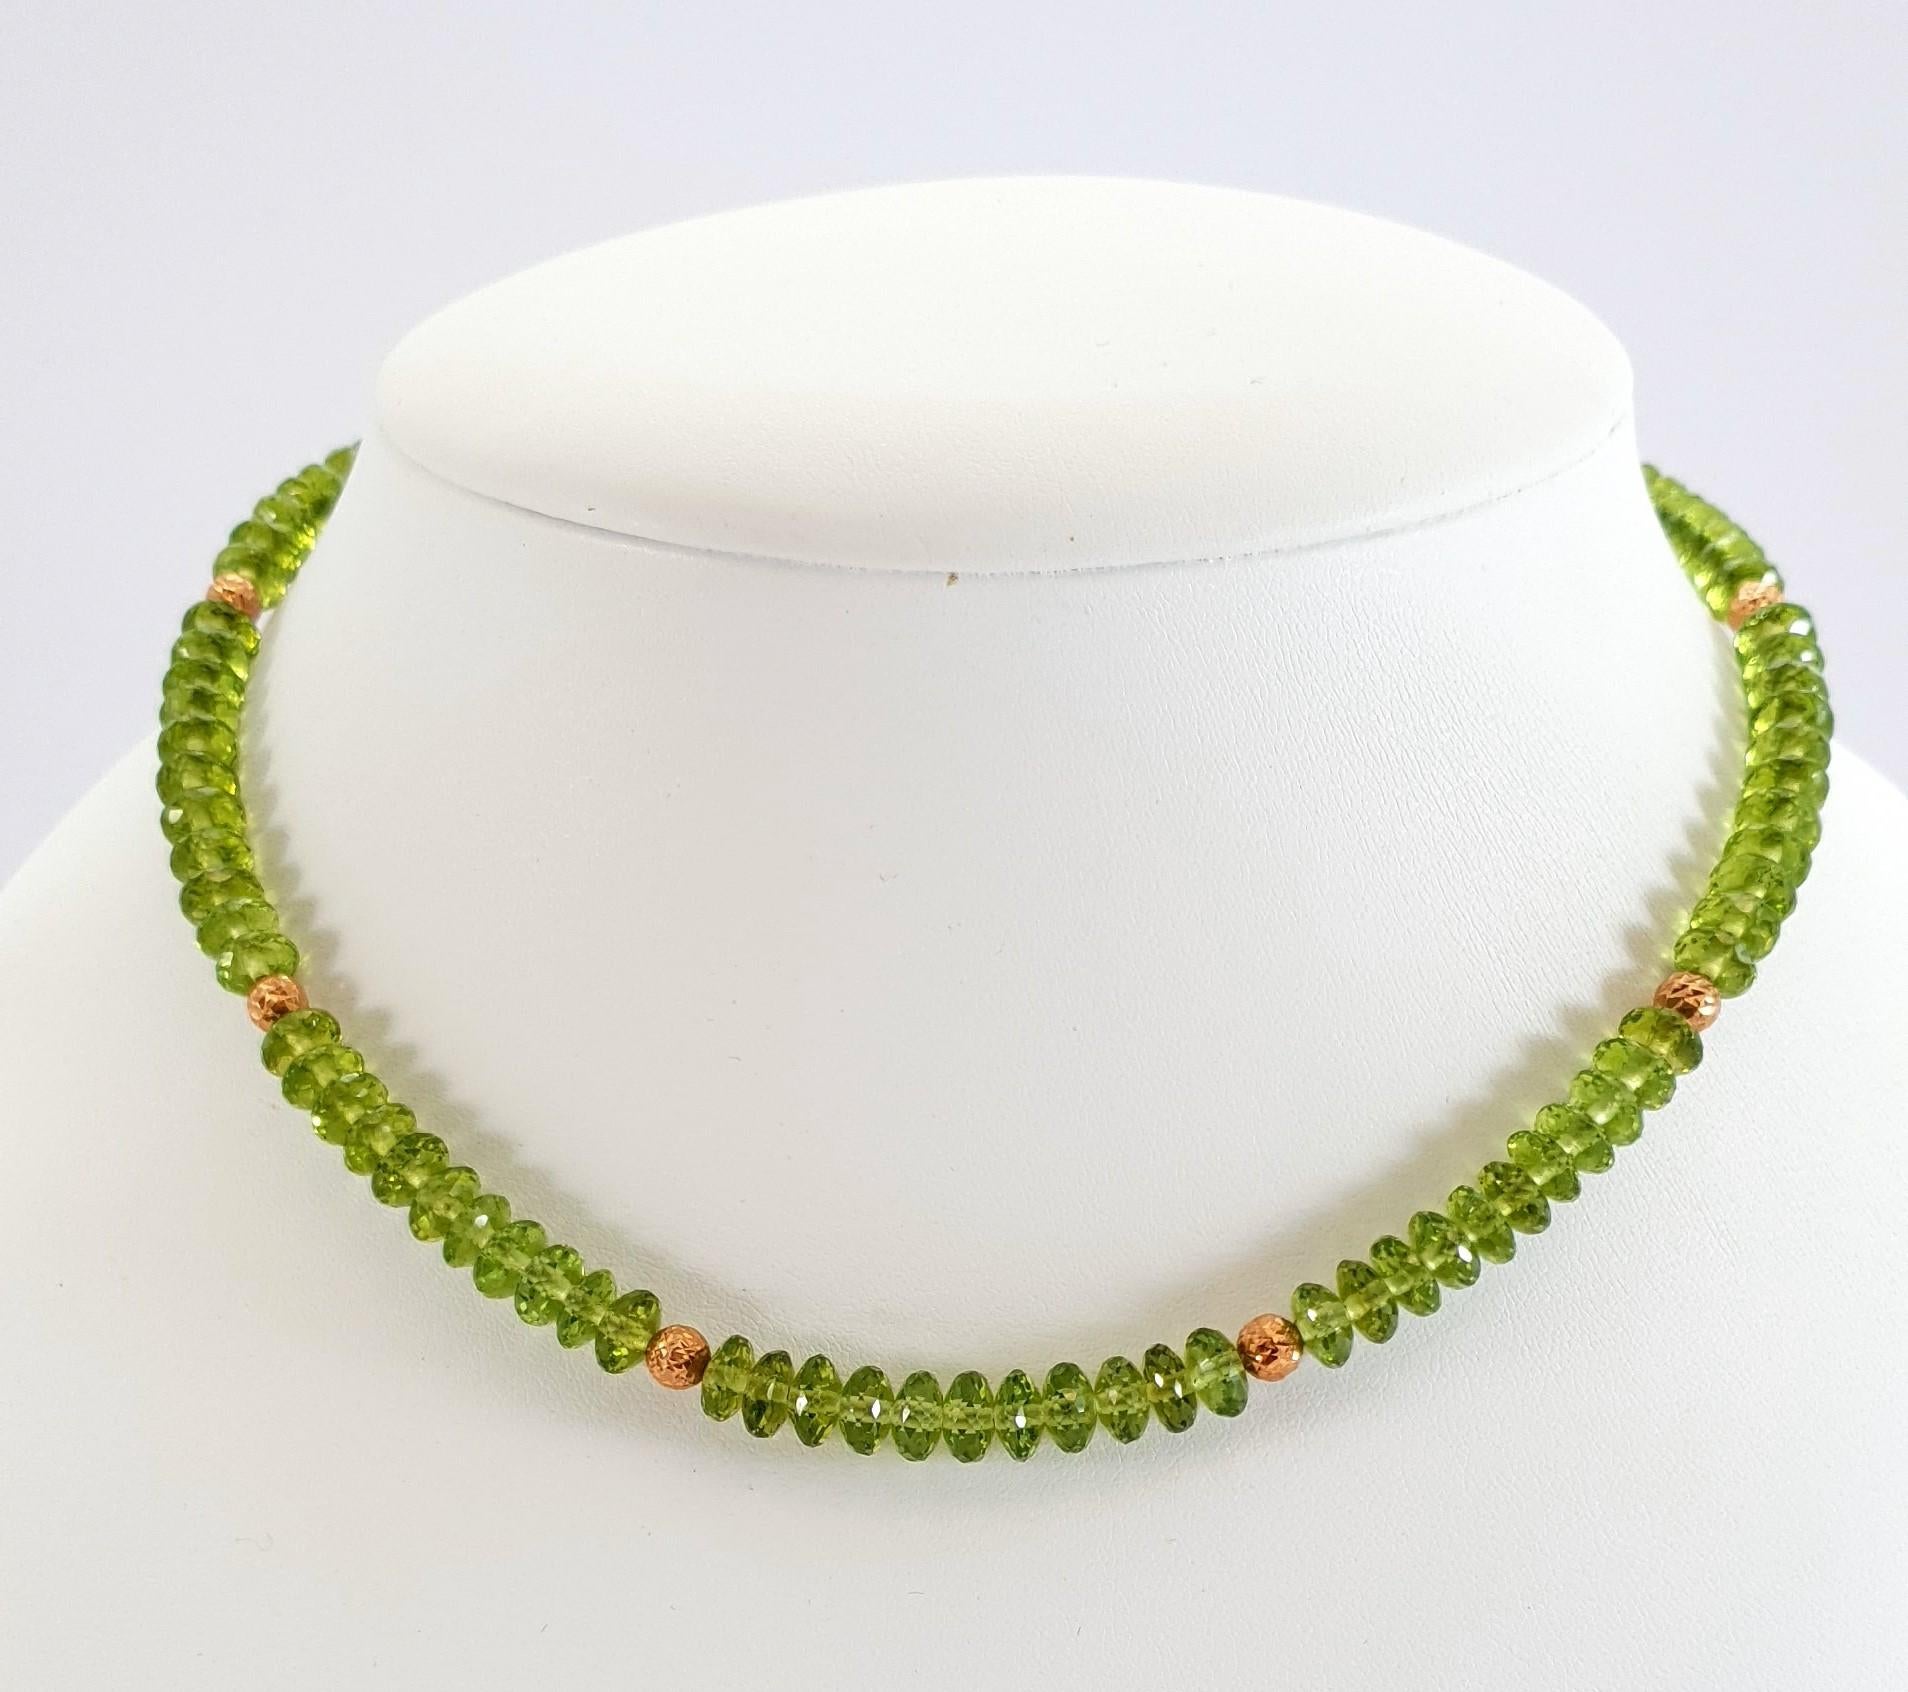 Diese facettierte grüne Peridot Rondell Perlenkette mit 18 Karat Roségold ist komplett handgefertigt. Sowohl das Schneiden als auch die Vergoldung sind in deutscher Qualität ausgeführt. Der Schraubverschluss ist einfach zu bedienen und sehr